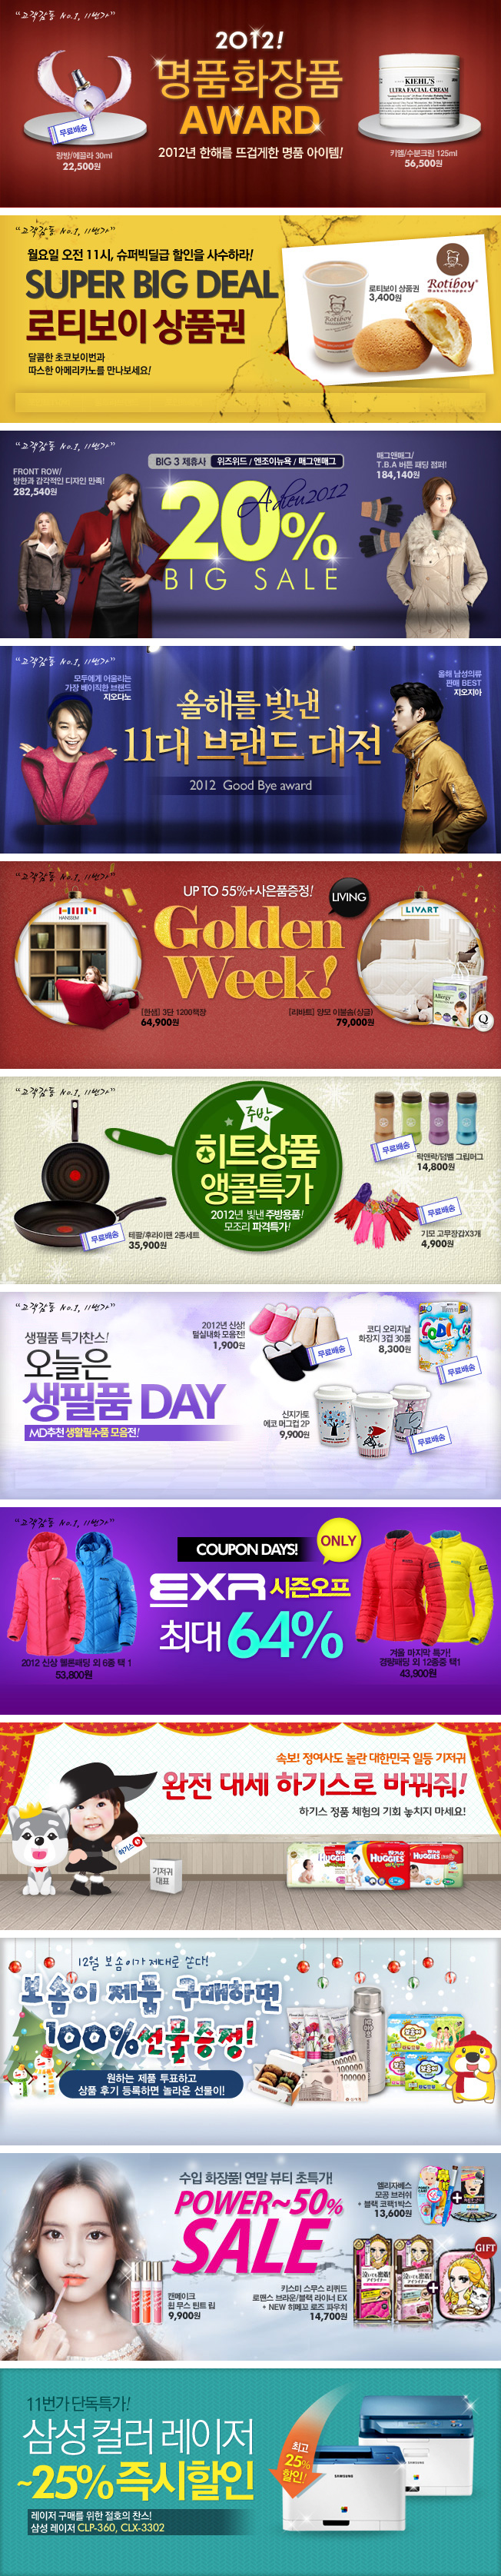 韩国购物网站Banner设计欣赏1227